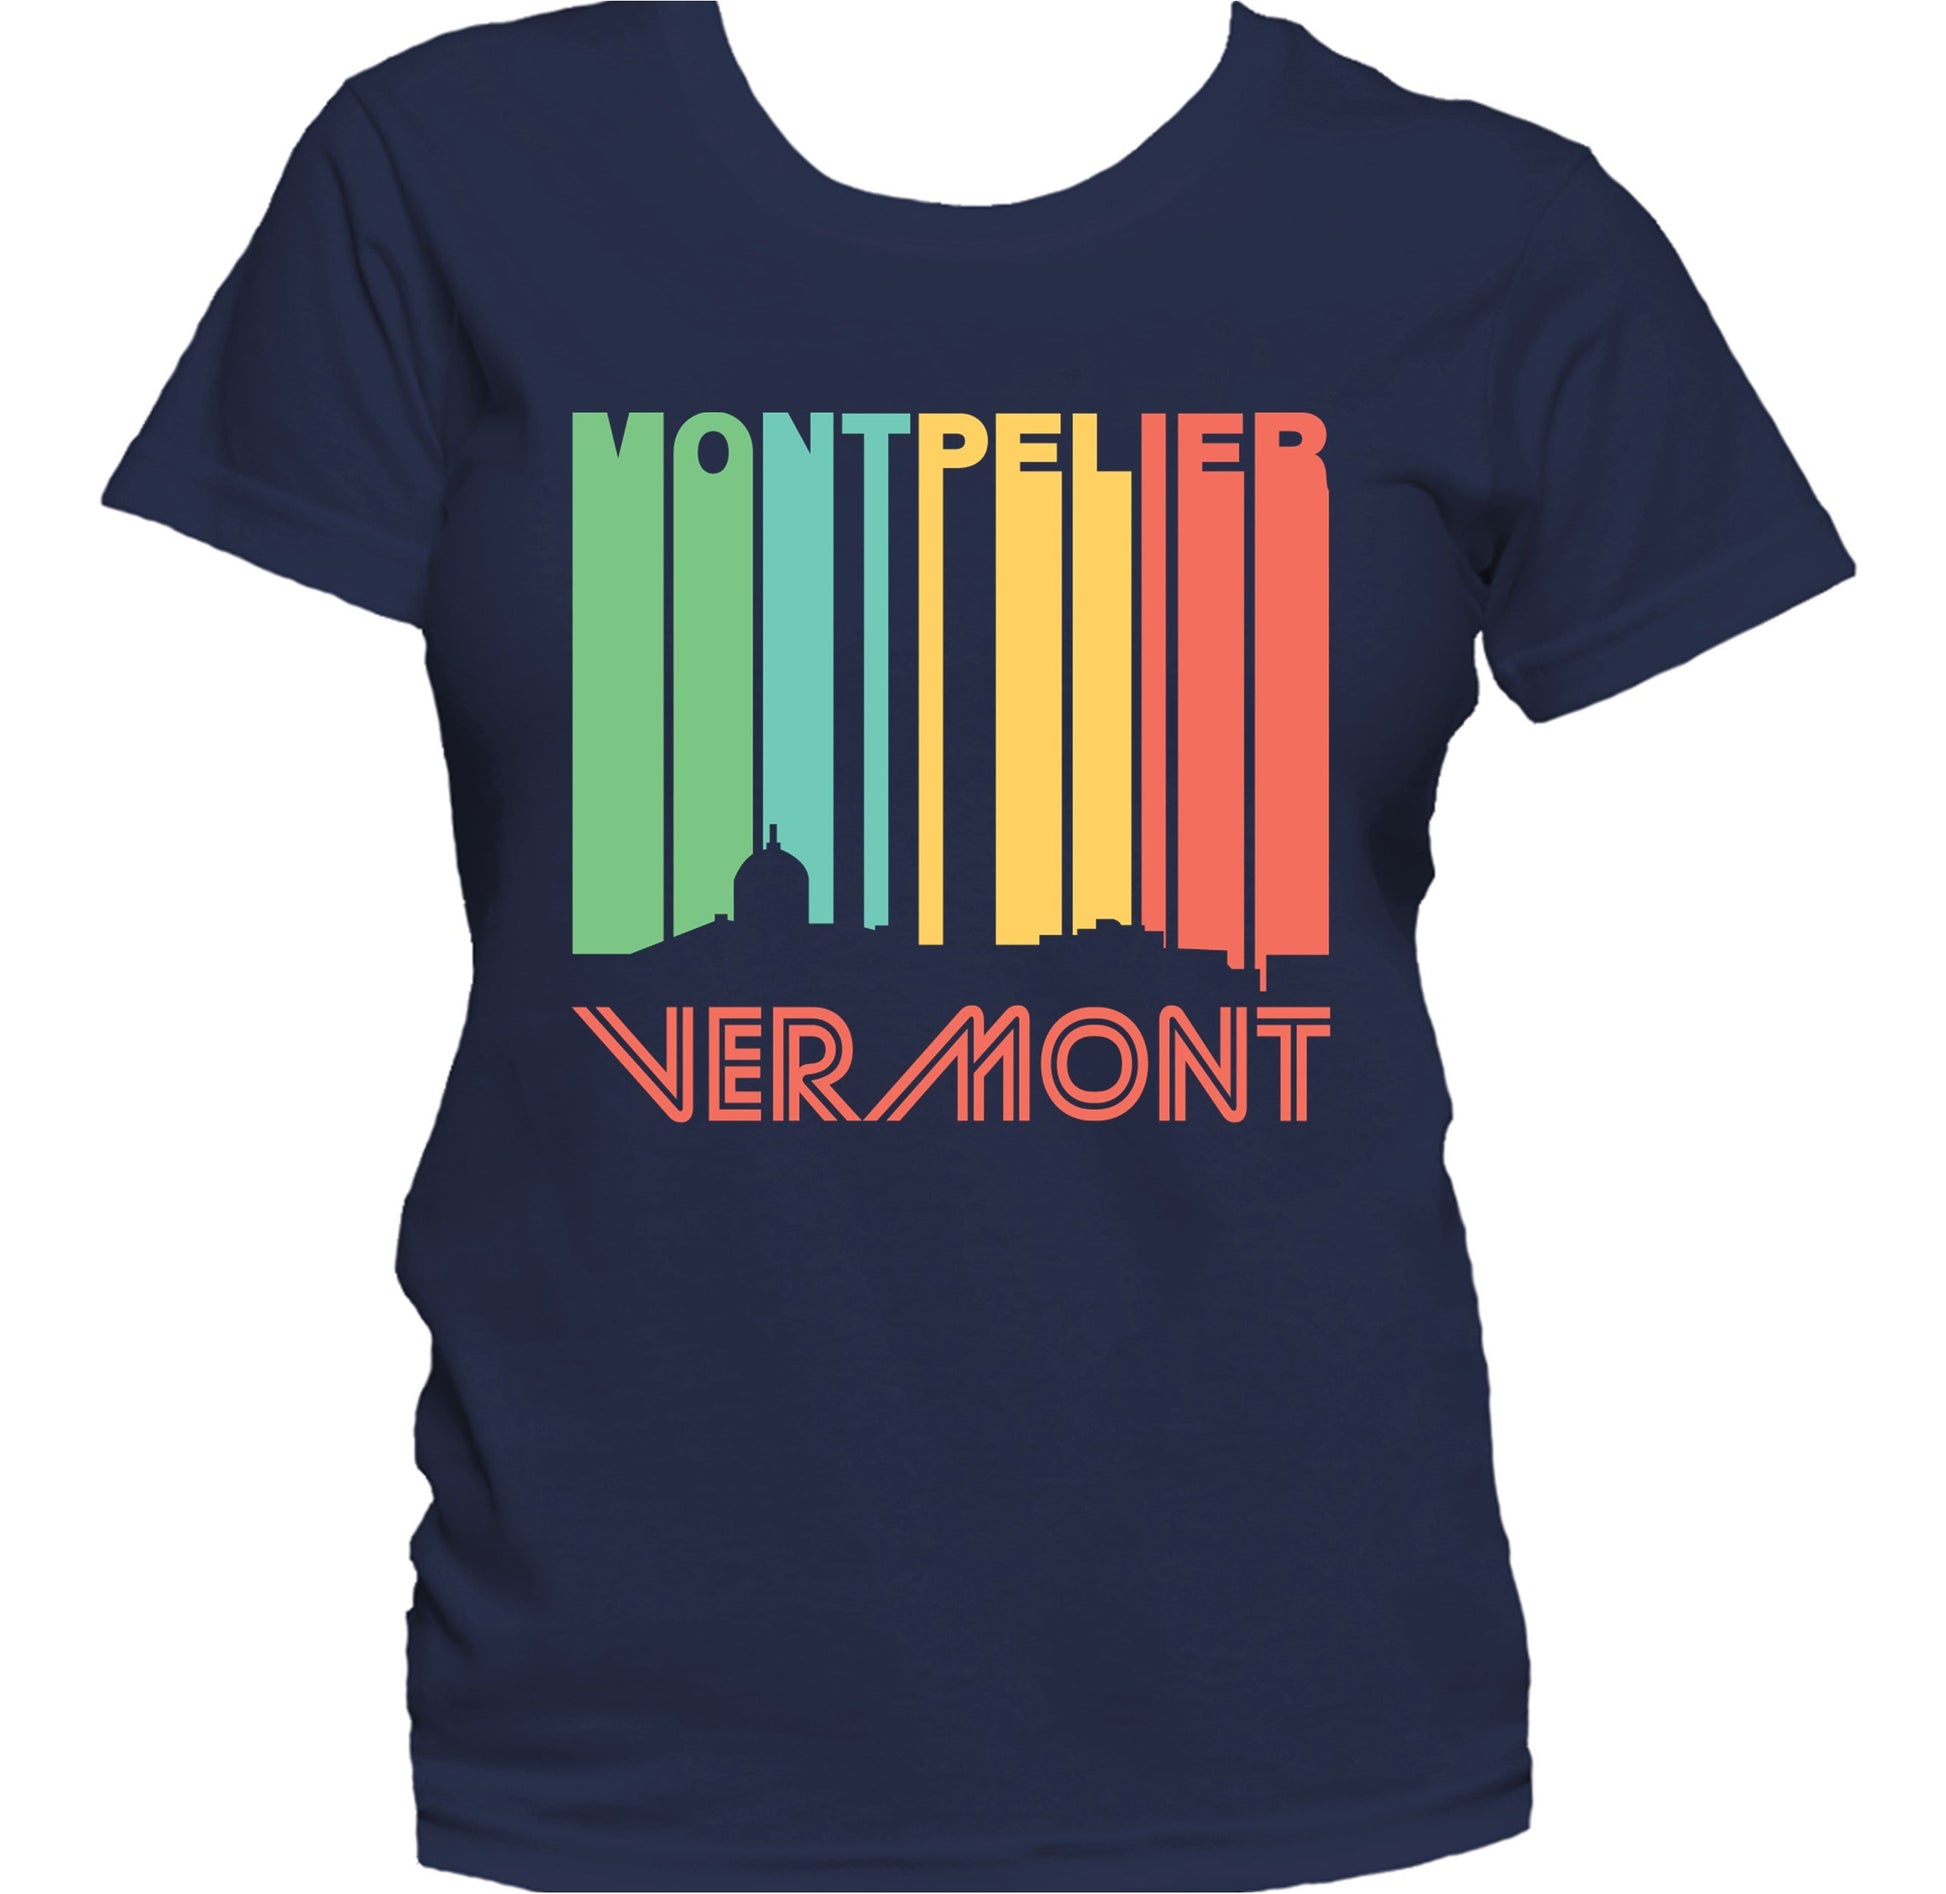 Retro 1970's Style Montpelier Vermont Skyline Women's T-Shirt